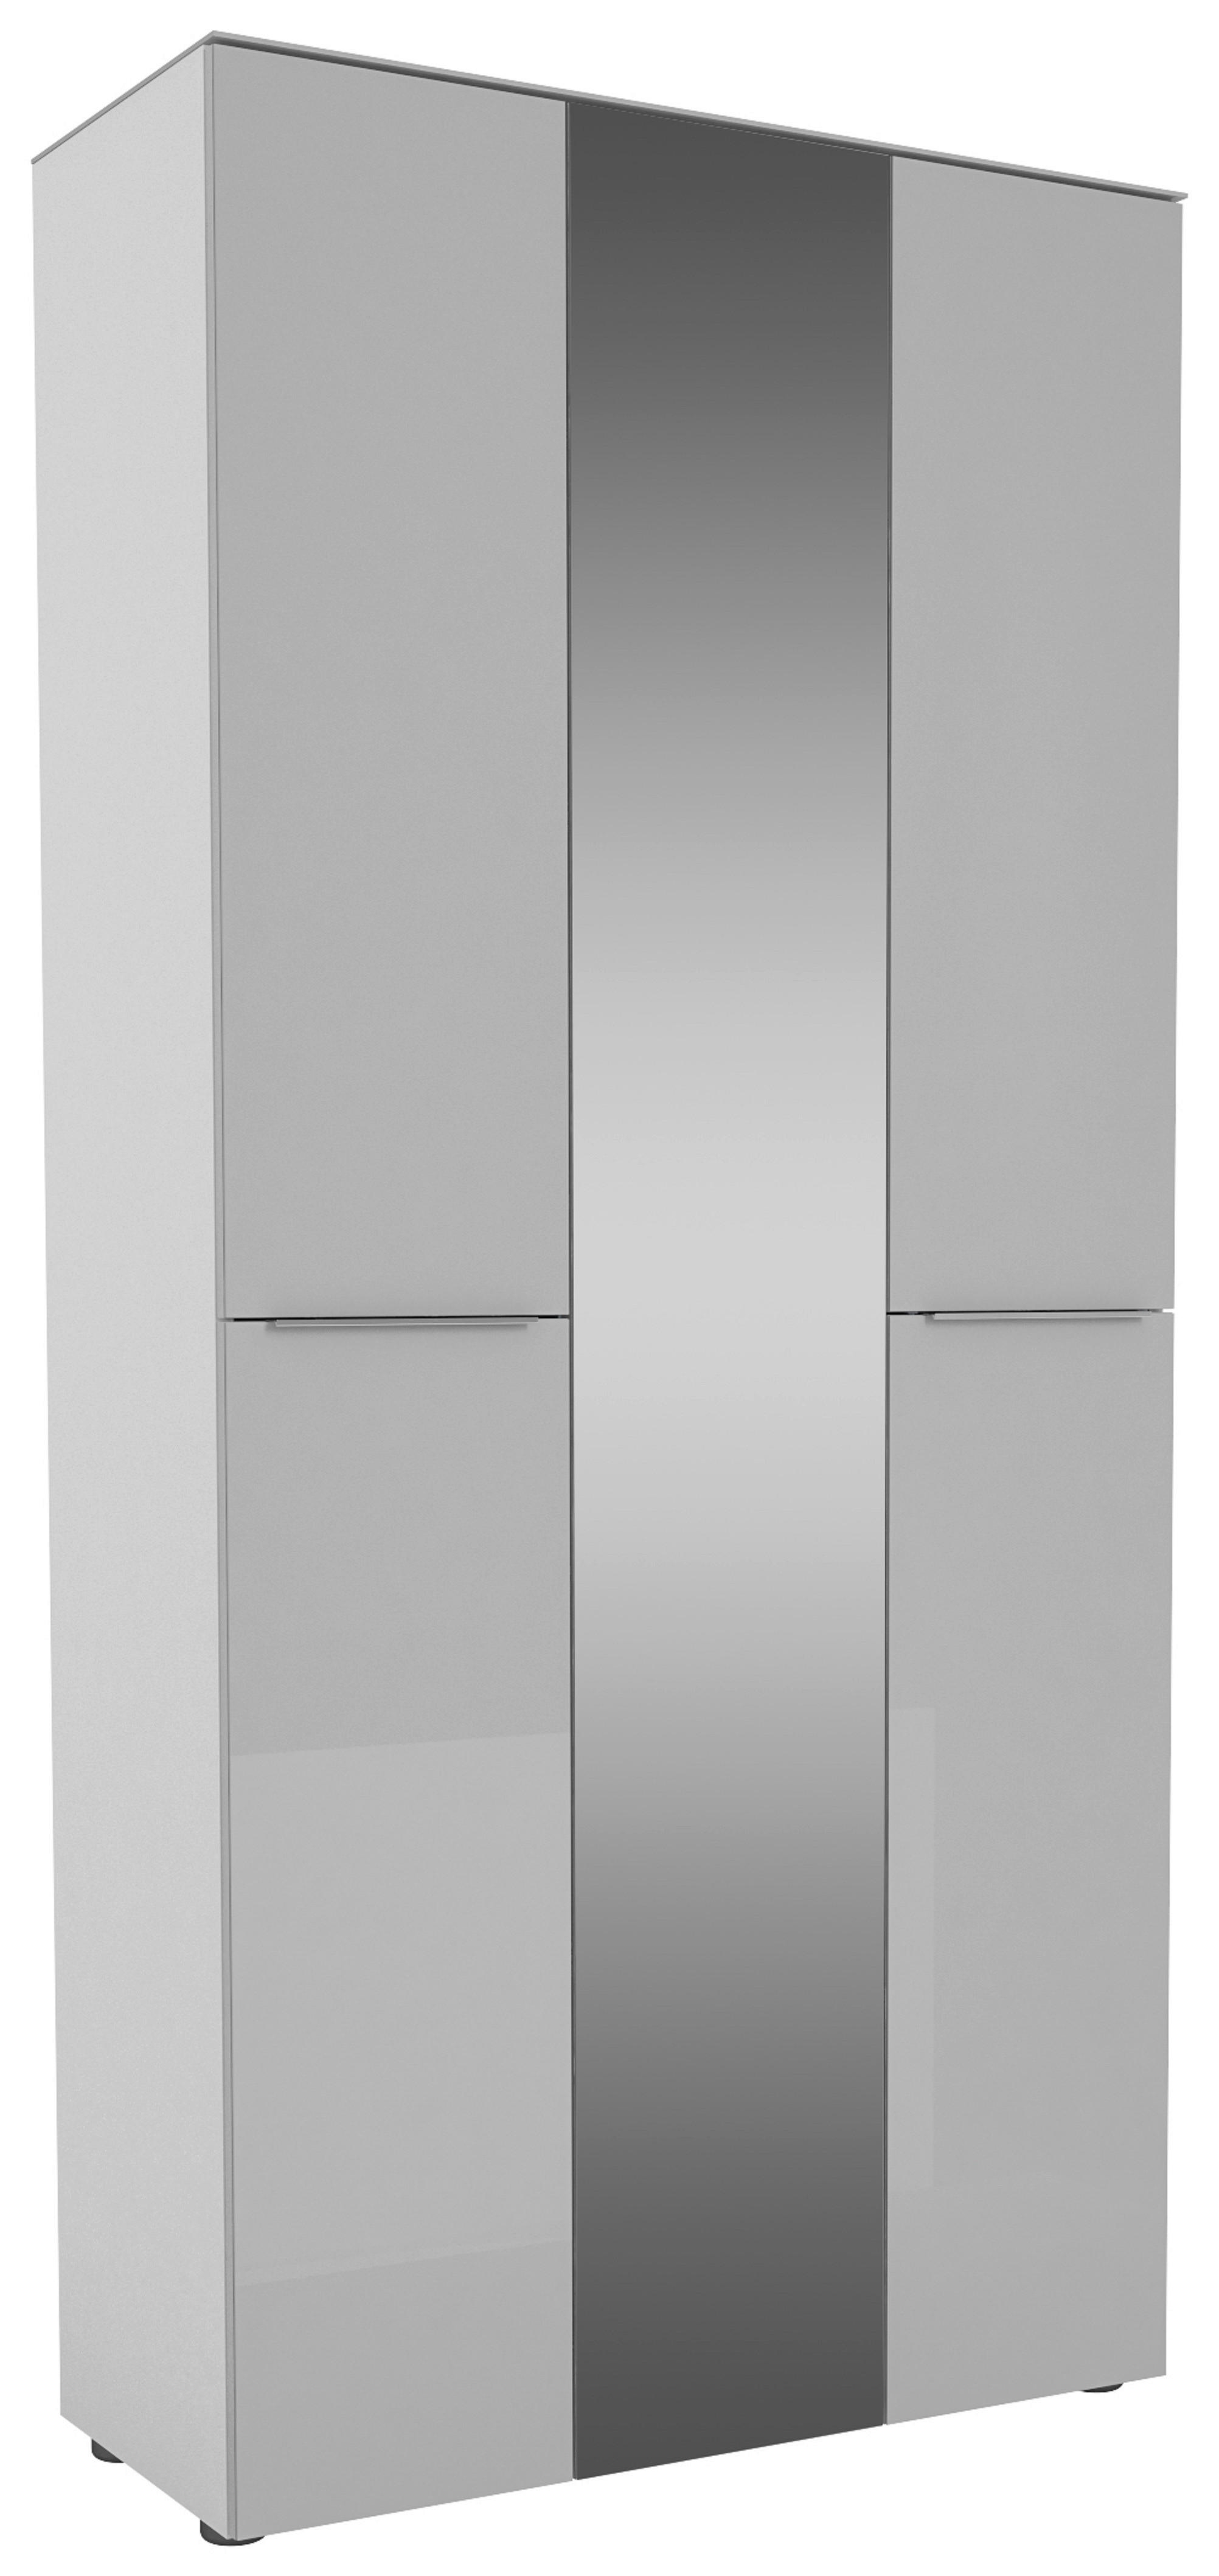 GARDEROBENSCHRANK Grau, Weiß  - Chromfarben/Weiß, Design, Glas/Holzwerkstoff (90/195/40cm)